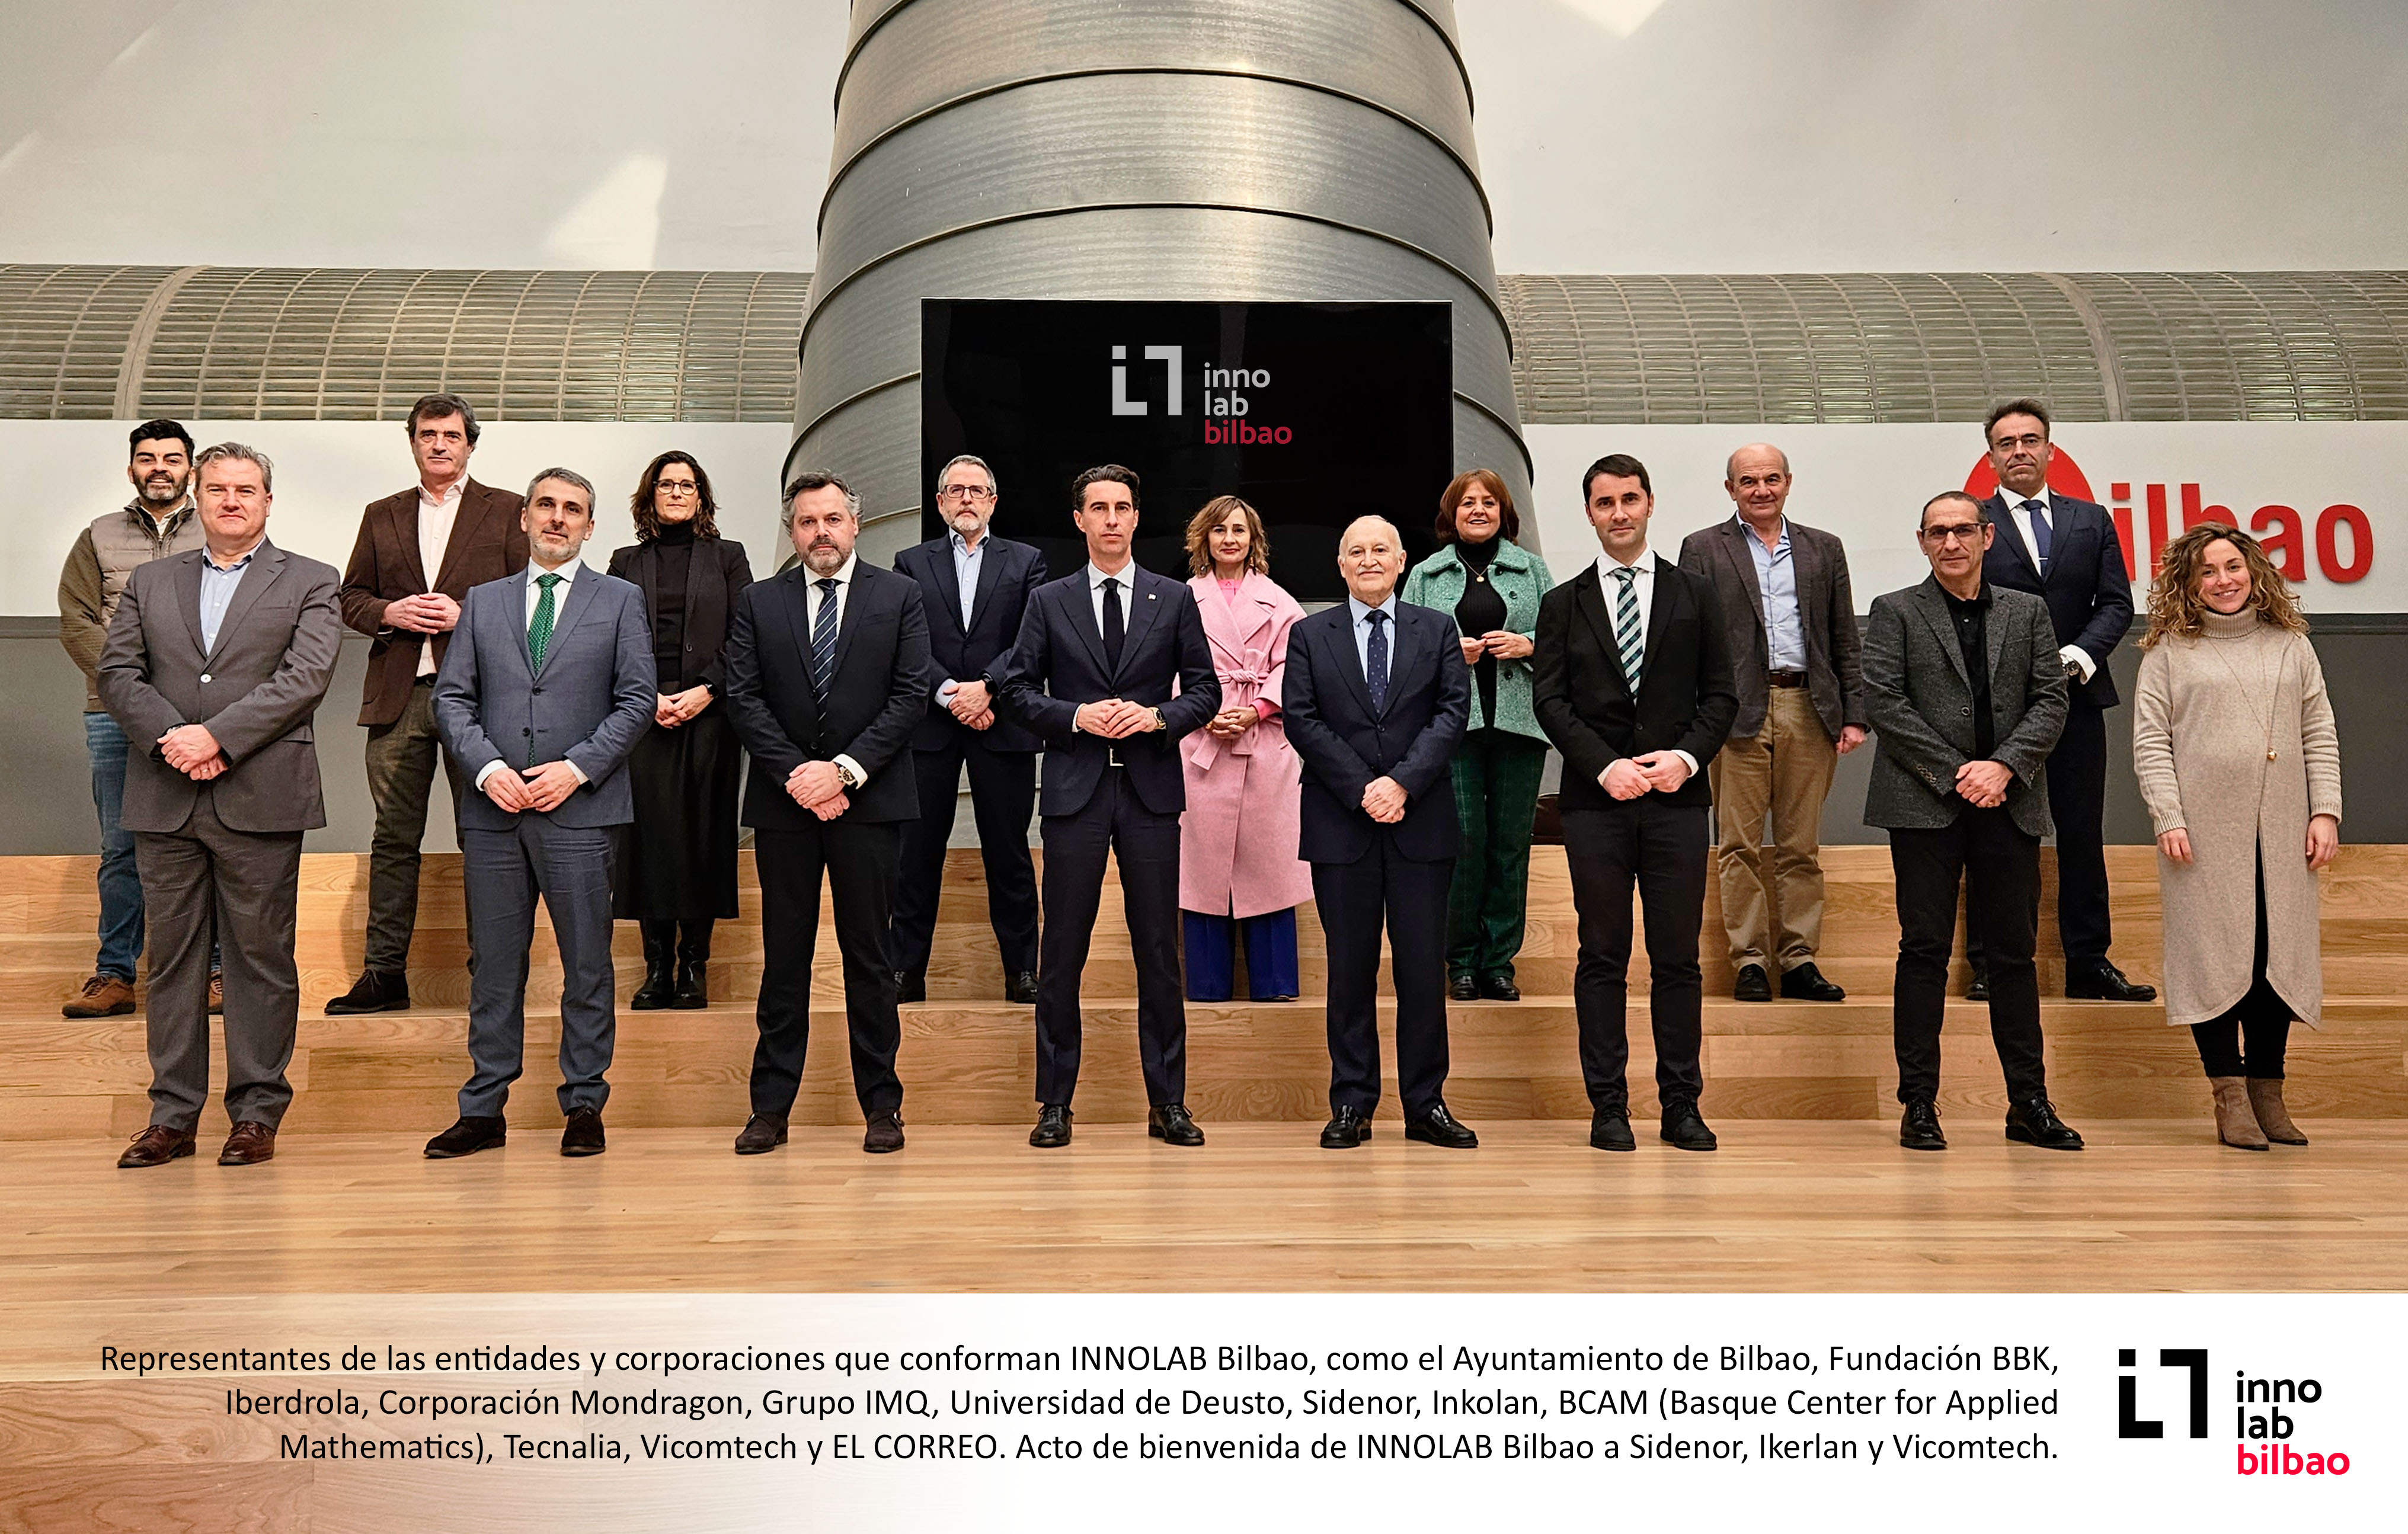 Vicomtech se une a INNOLAB Bilbao, apostando por su proyecto de conectar empresas y tecnología a través de soluciones digitales